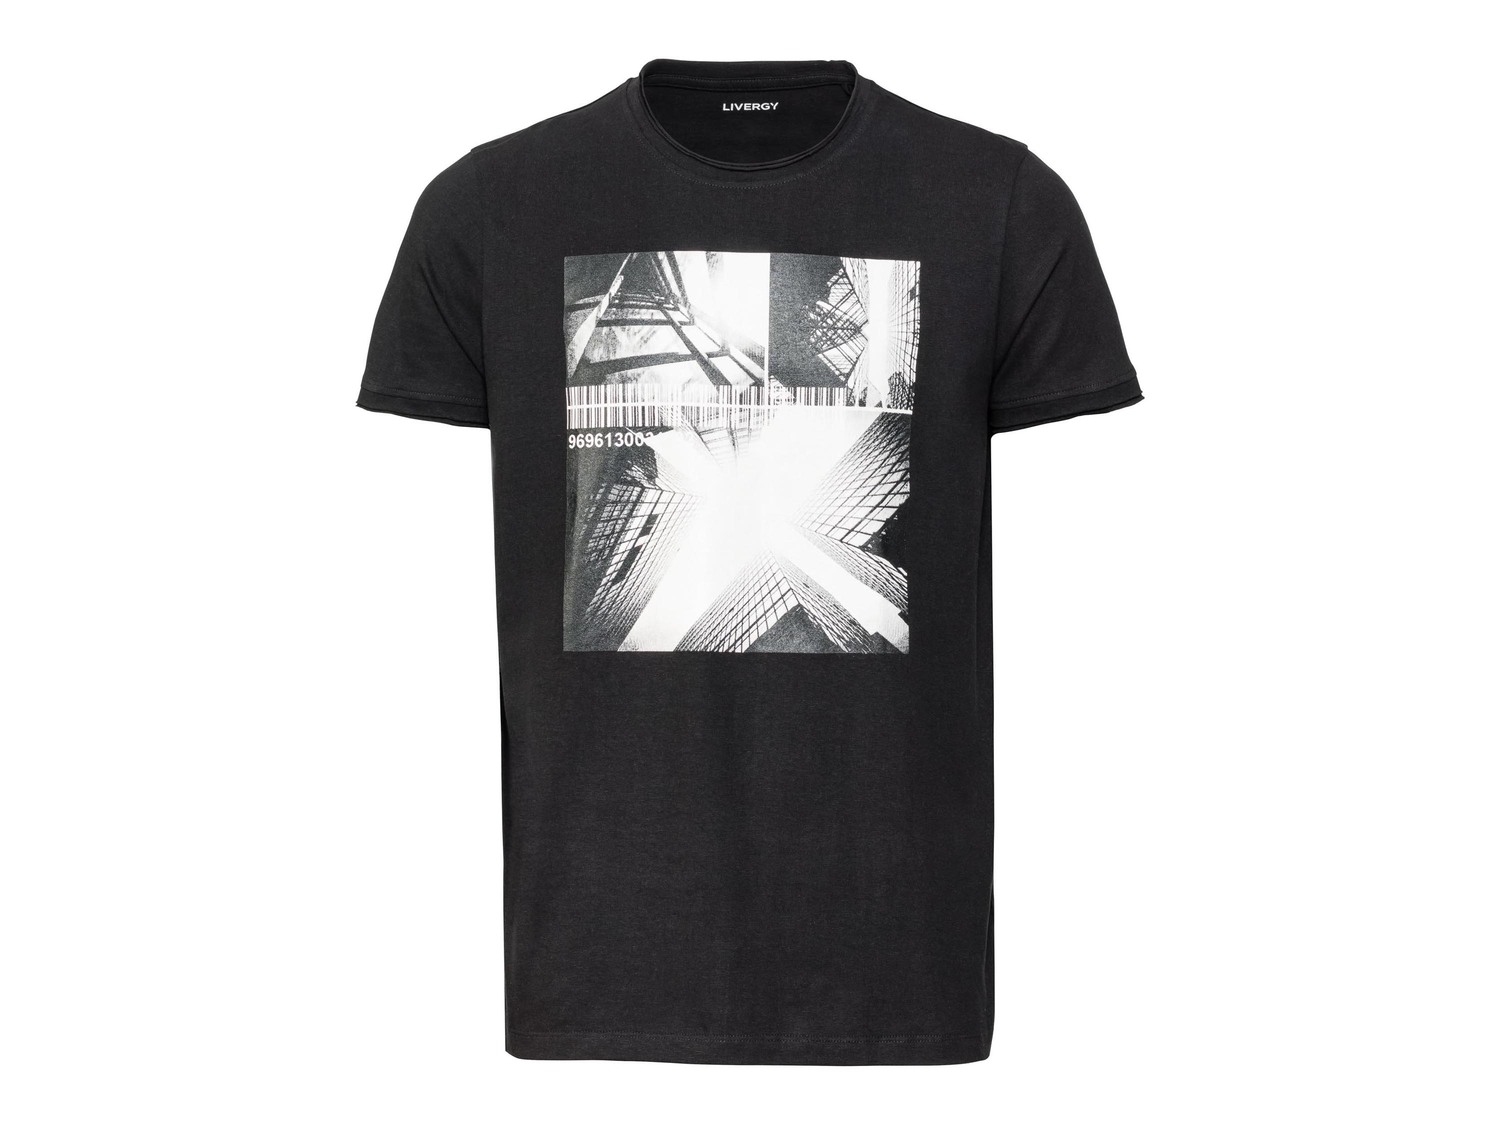 T-shirt da uomo Livergy, prezzo 2.99 &#8364;  
-  In puro cotone